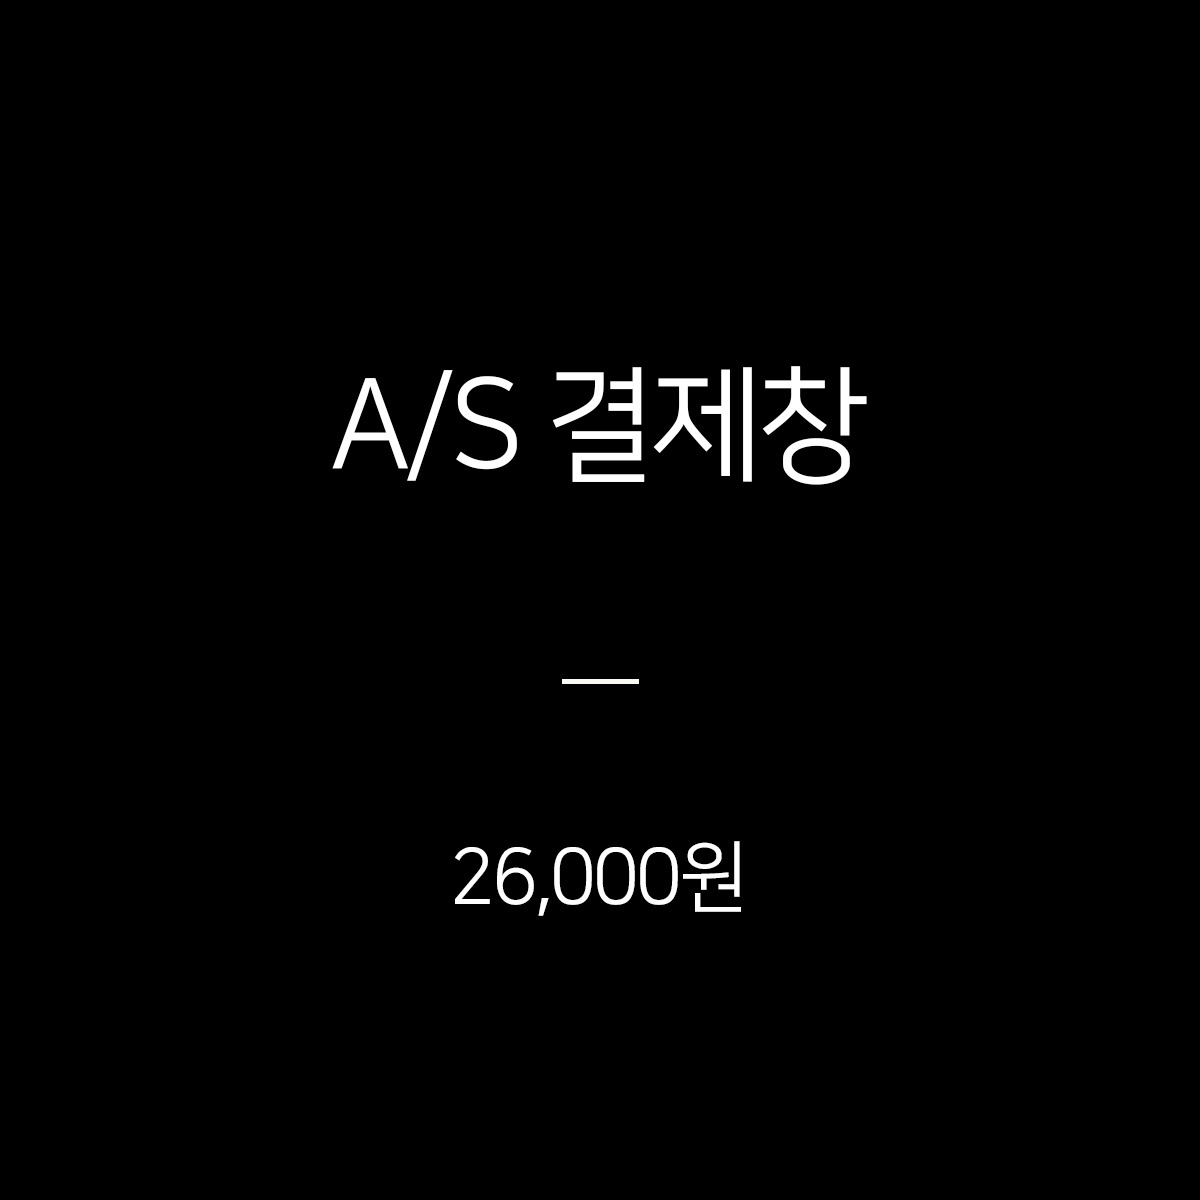 A/S 결제창 - 26,000원